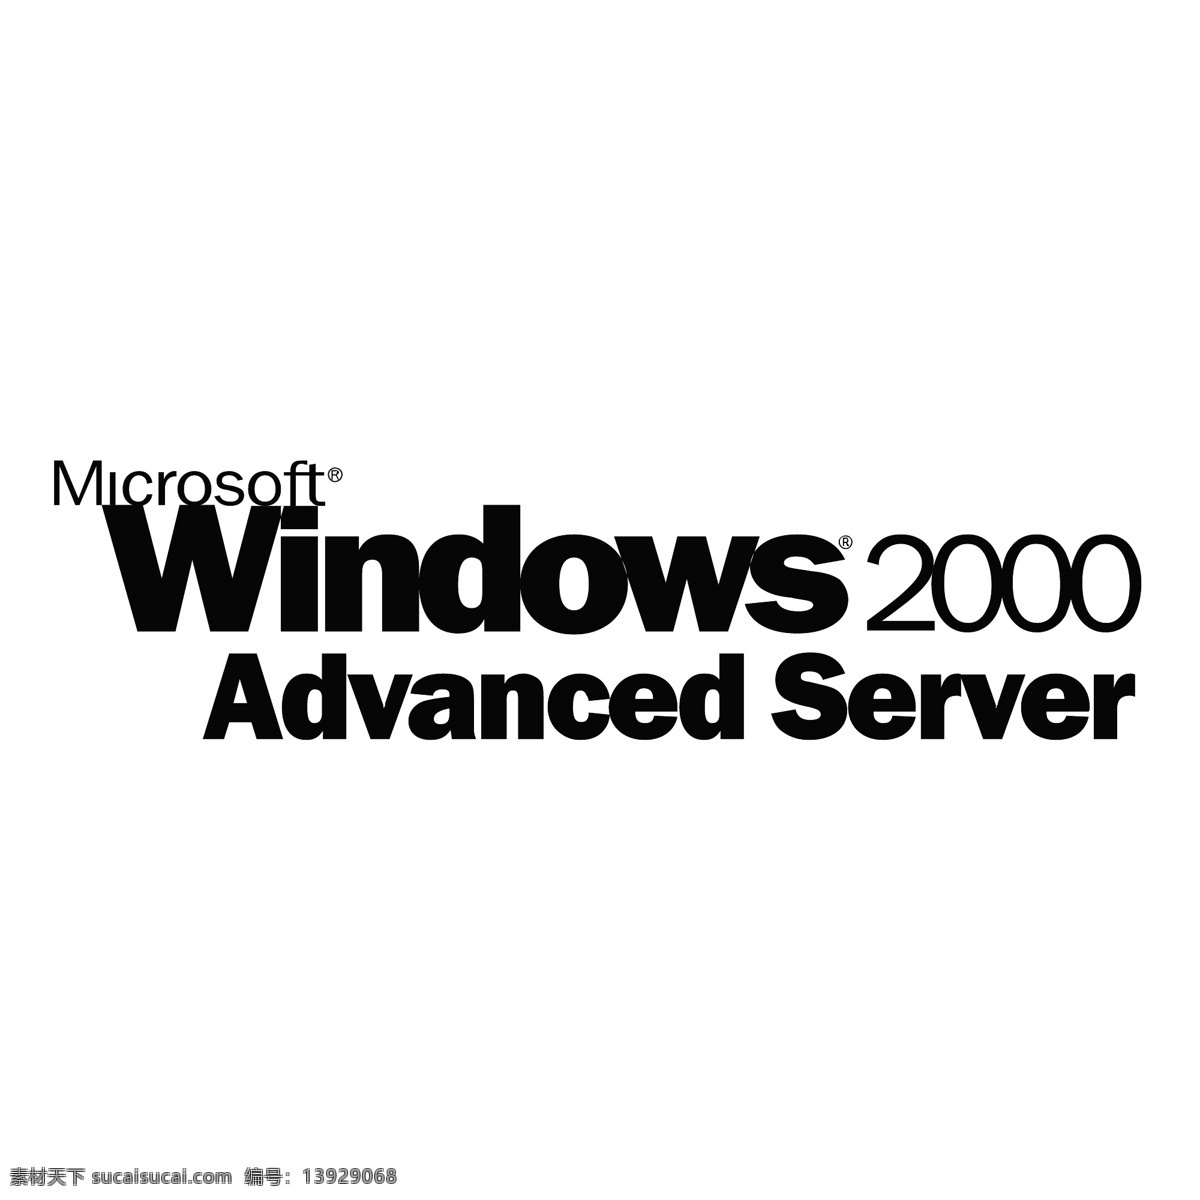 微软 windows 2000 advanced server 先进的 先进的服务器 服务器 矢量 免费 艺术 白色